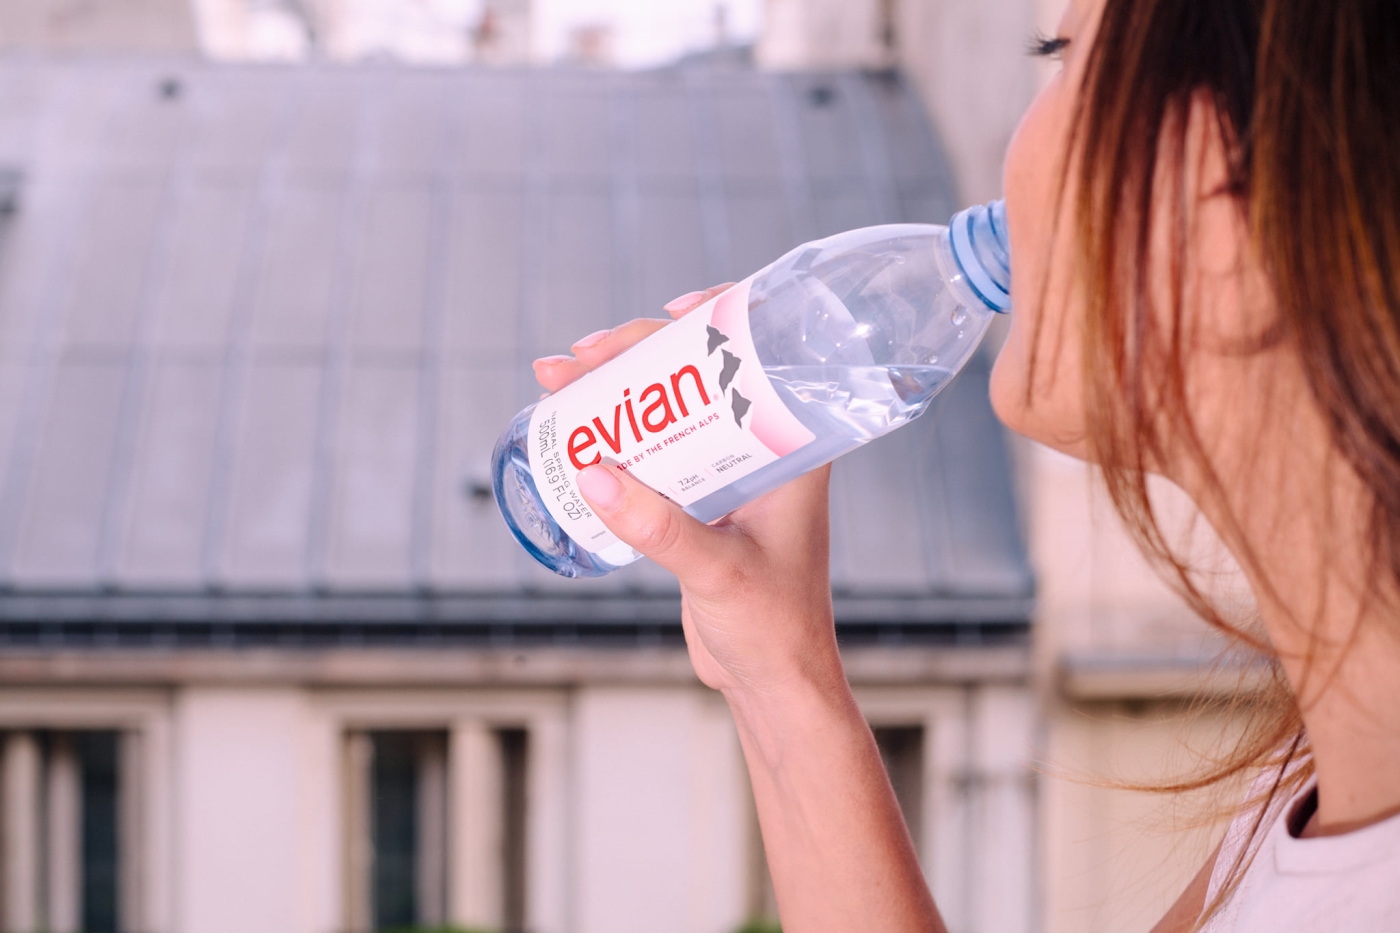 Le tweet d’Évian a généré plus de 1 000 réponses (Facebook/@evianFrance)